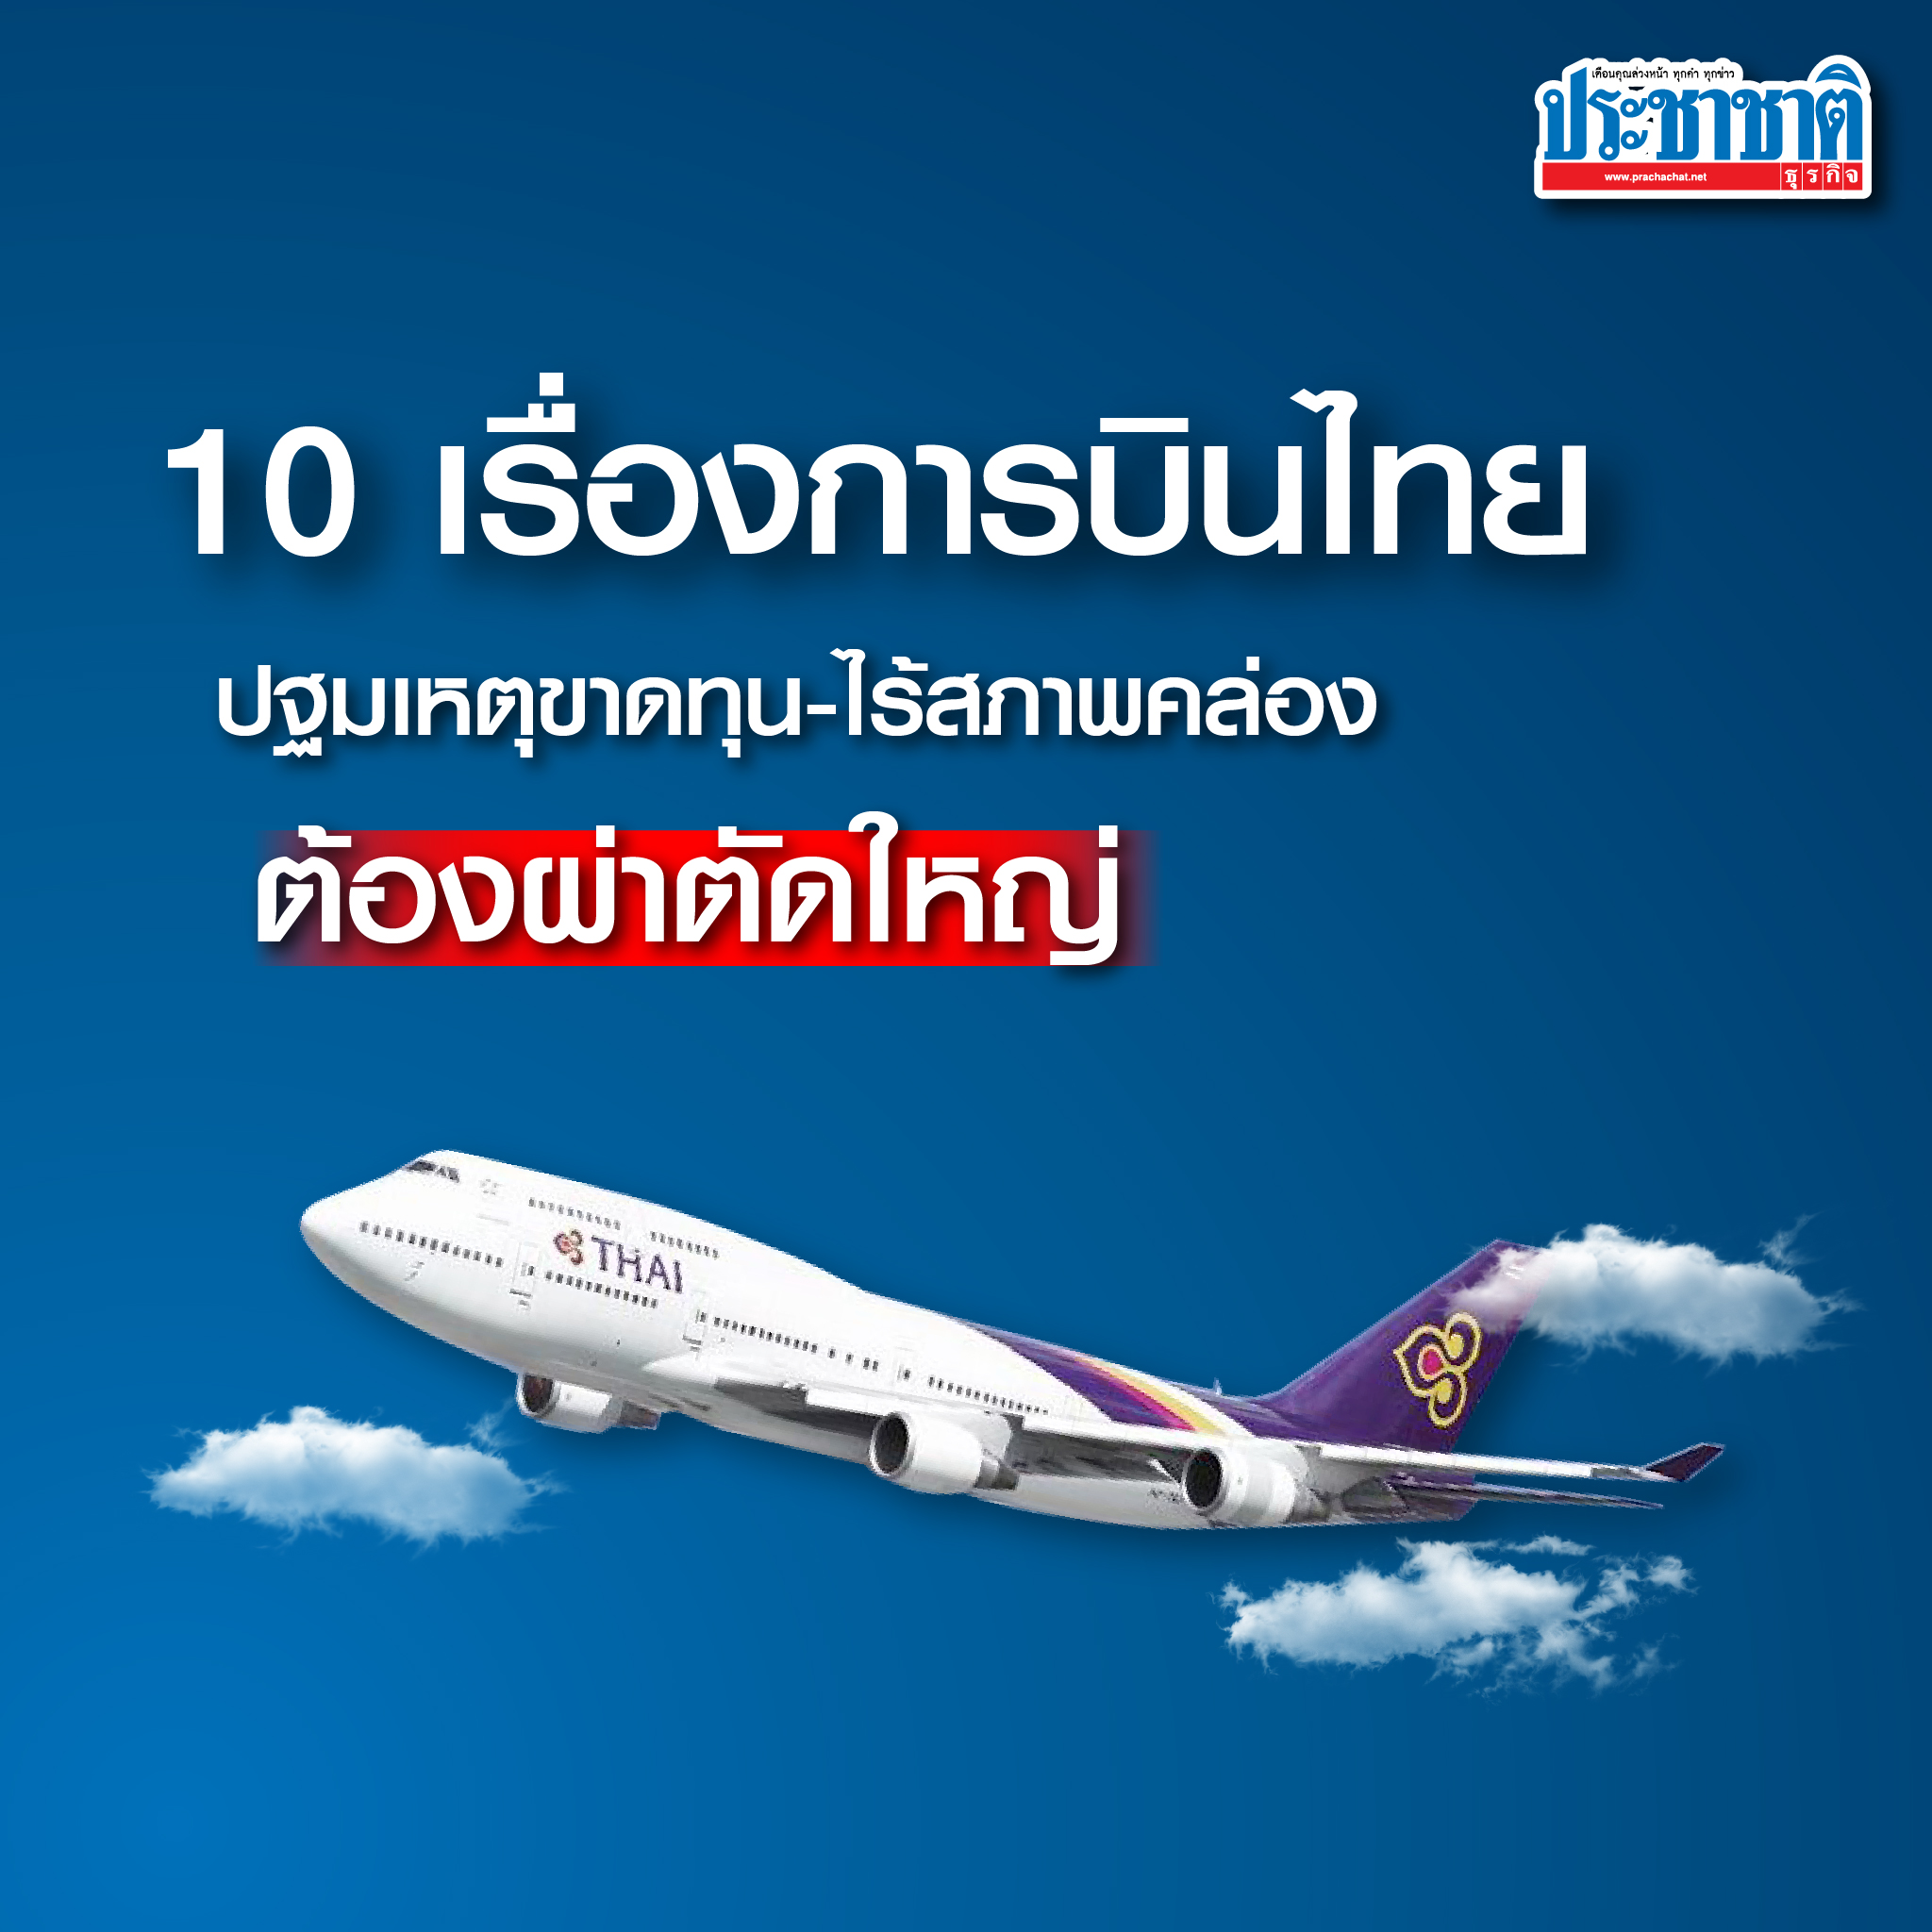 10 เรื่องการบินไทย ปฐมเหตุขาดทุน-ไร้สภาพคล่อง ต้องผ่าตัดใหญ่